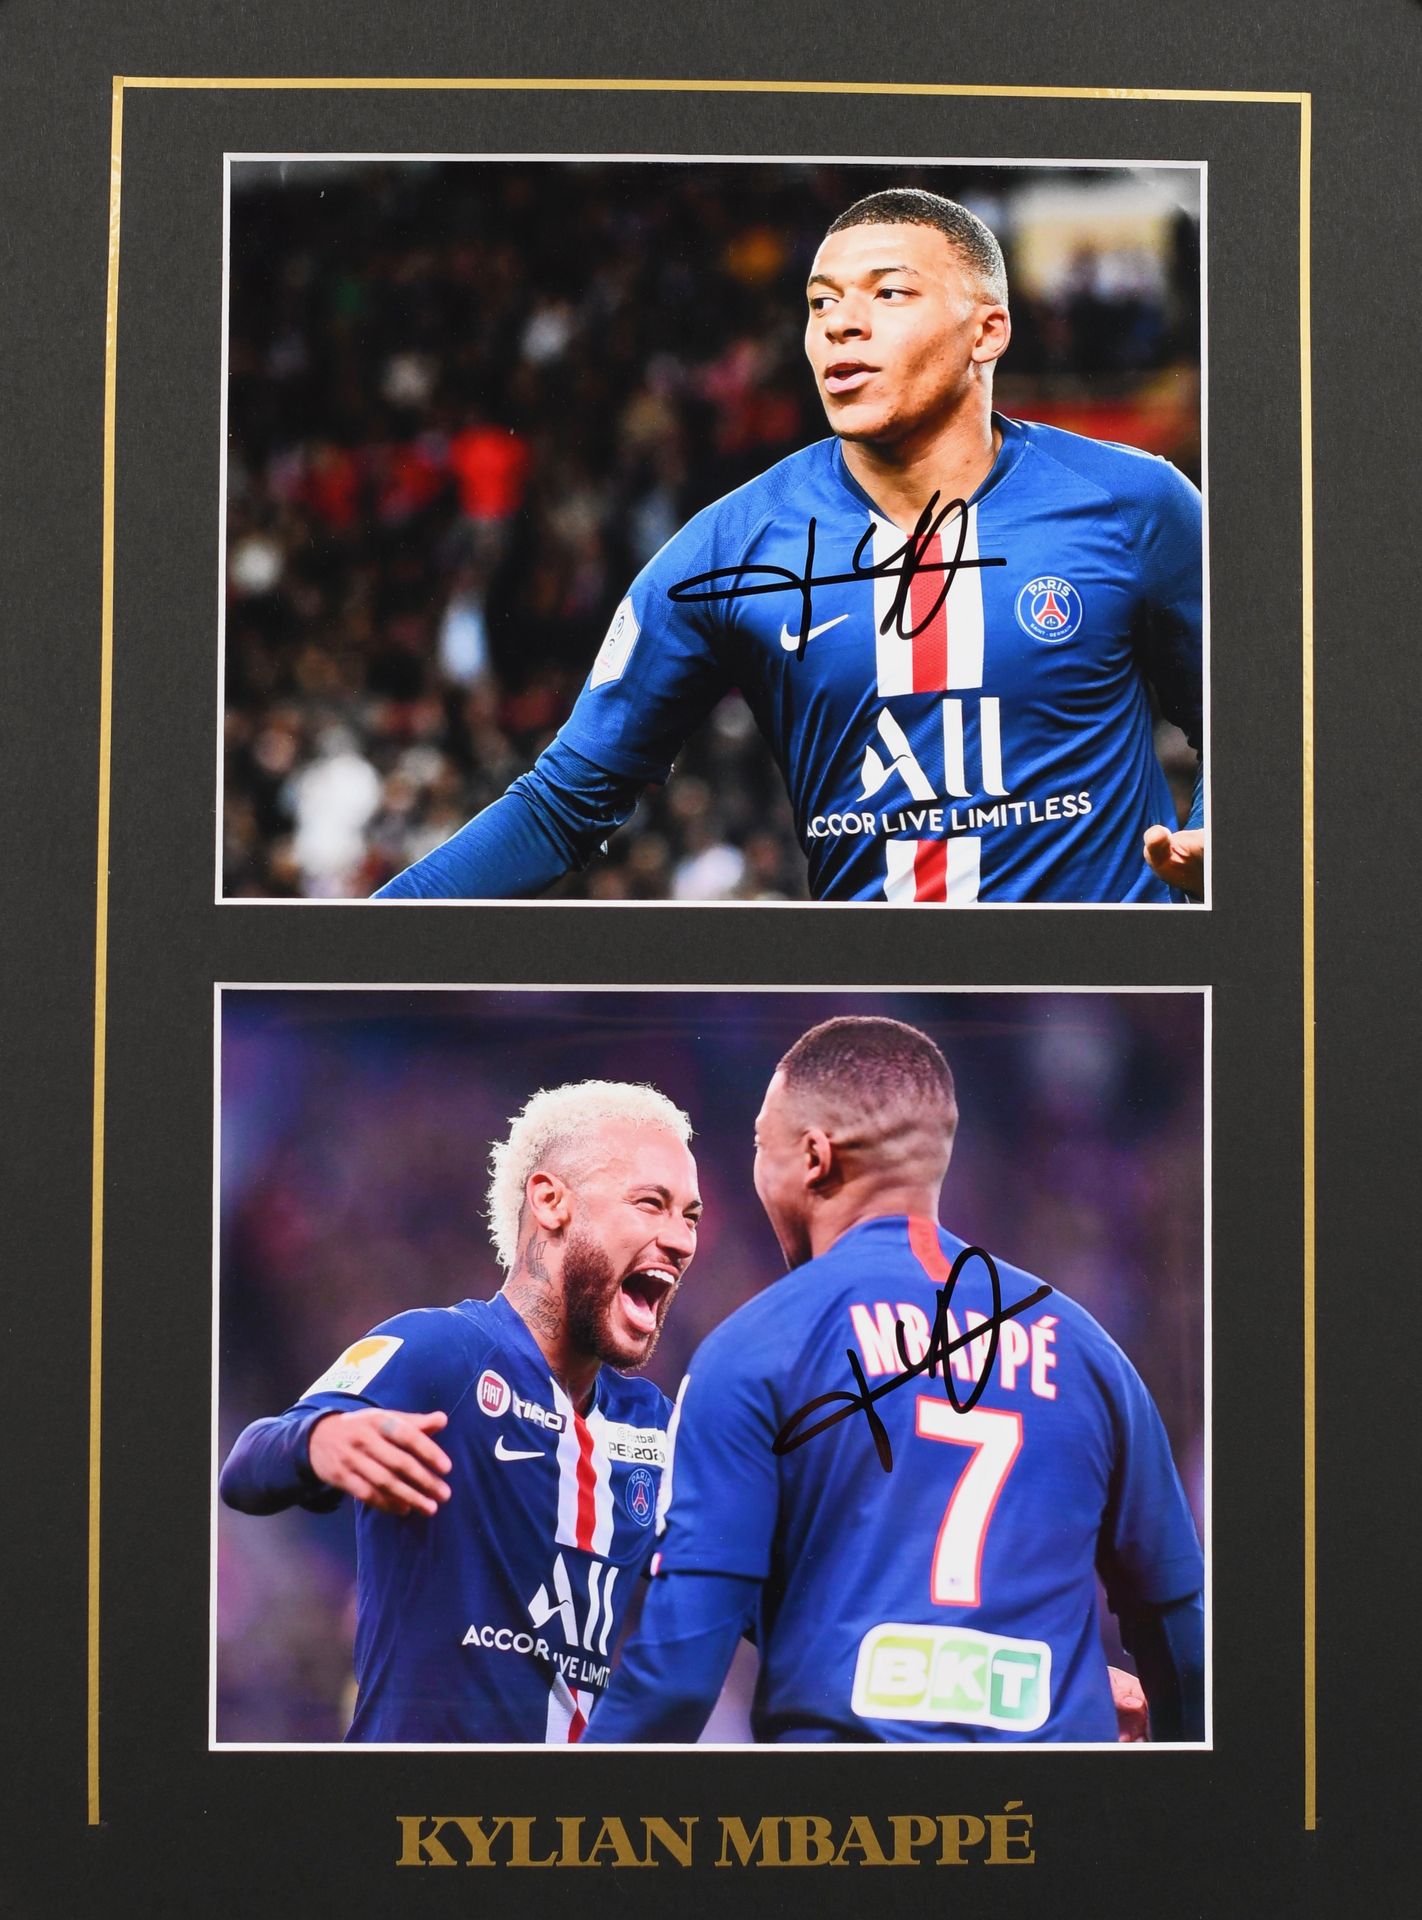 Null 凯利安-姆巴佩。一套2张由身穿巴黎圣日耳曼球衣的球员亲笔签名的照片。他将与PSG一起成为法国的4次冠军。彩色照片。格式为每幅15x20厘米，置于30x&hellip;